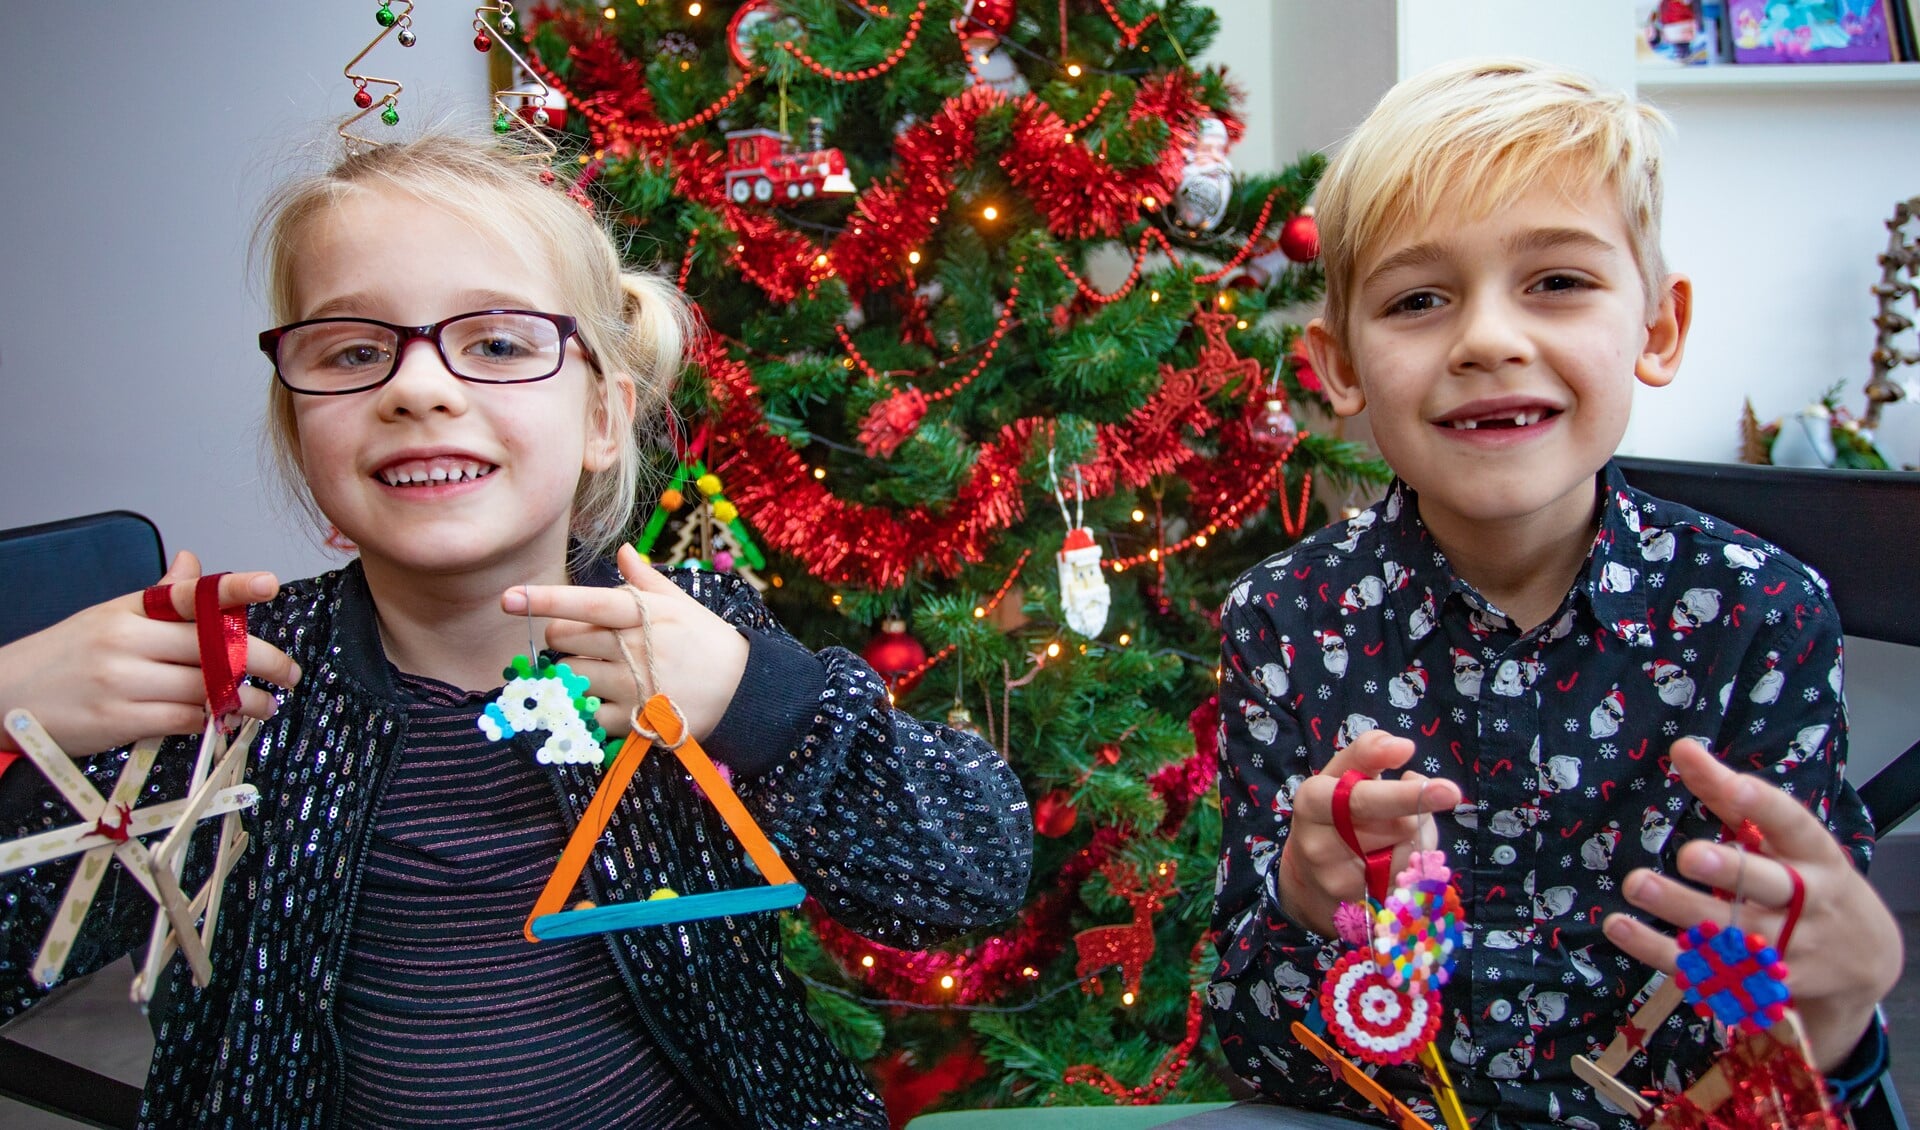 Josefien en Jasper tonen trots enkele zelfgemaakte kerstknutsels voor in de boom.